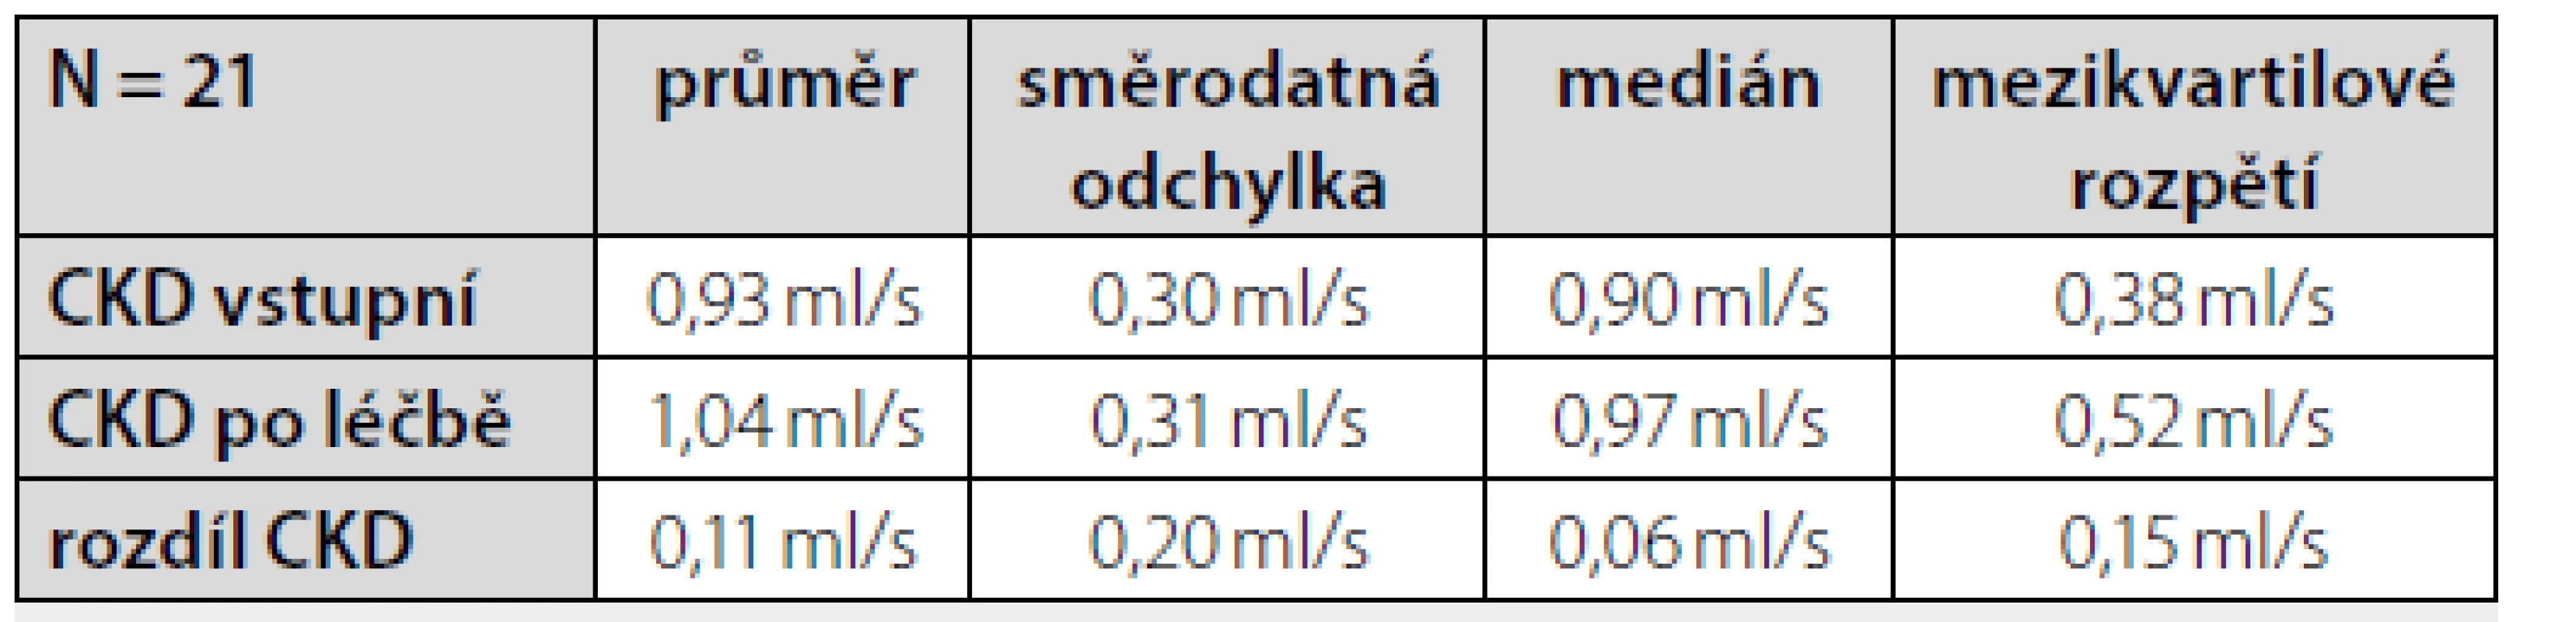 Hodnoty glomerulární filtrace (ml/s) změřené před zahájením léčby
sacubitril/valsartanem a po 12 měsících léčby